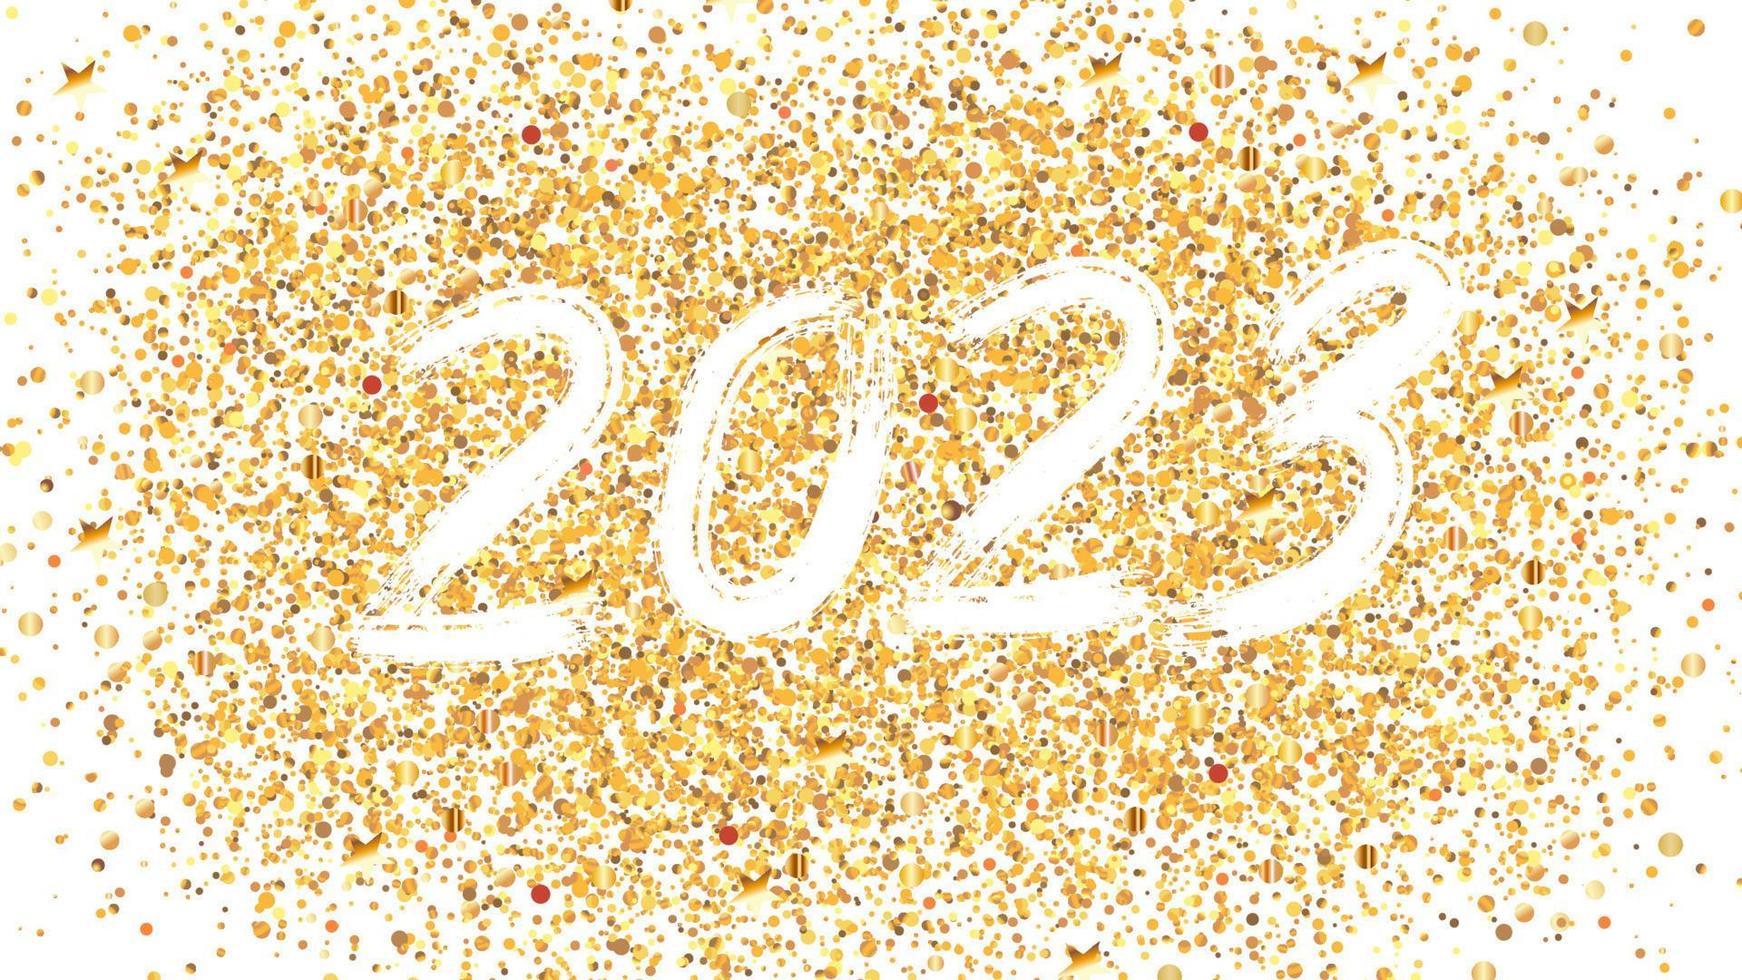 borstel nummers 2023 voor het nieuwe jaar. witte cijfers op een gouden basis. sjabloon voor ansichtkaarten, prenten, uitnodigingen, etiketten. vectorillustratie. vector